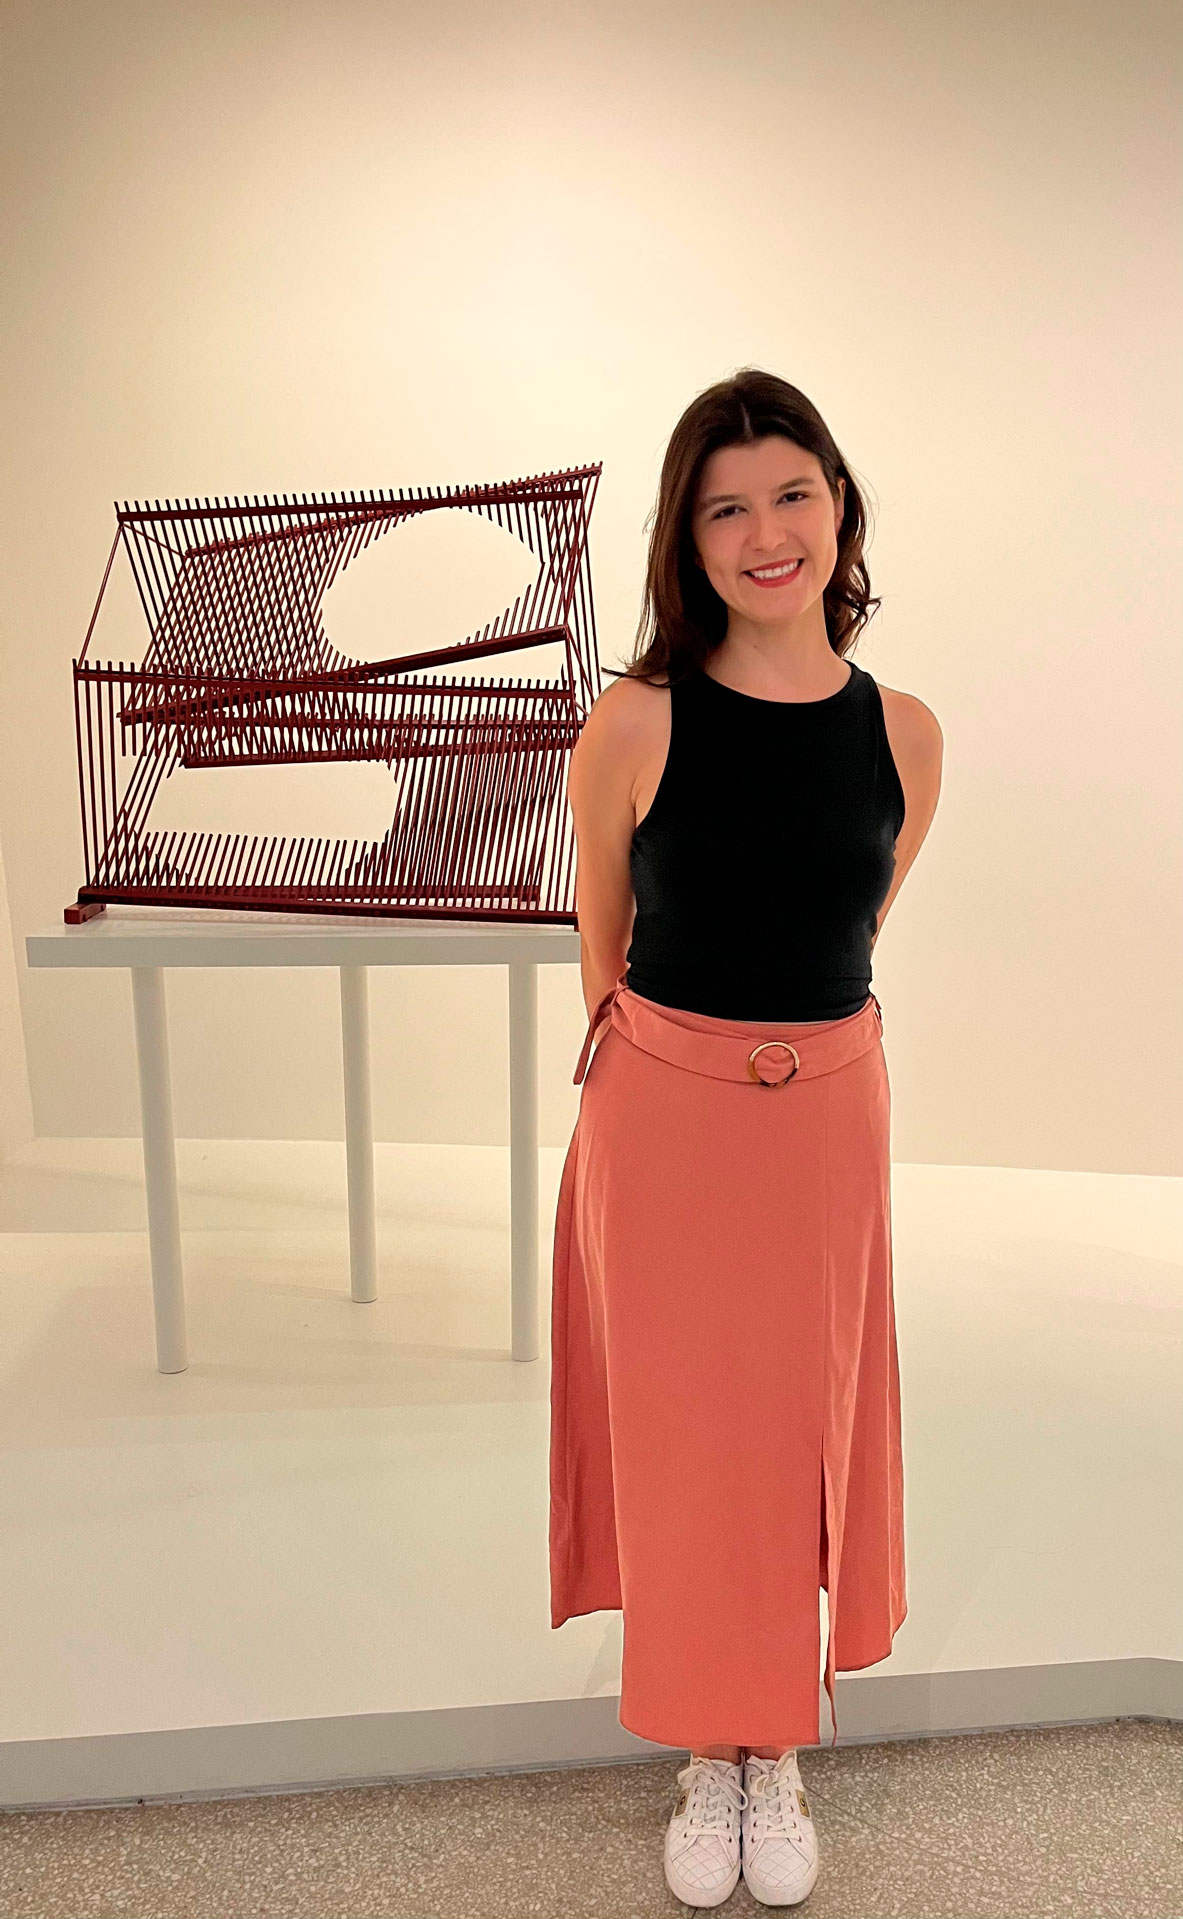 Entrevista. Lina Méndez es assistant registrar de la colección Patricia Phelps de Cisneros en Nueva York